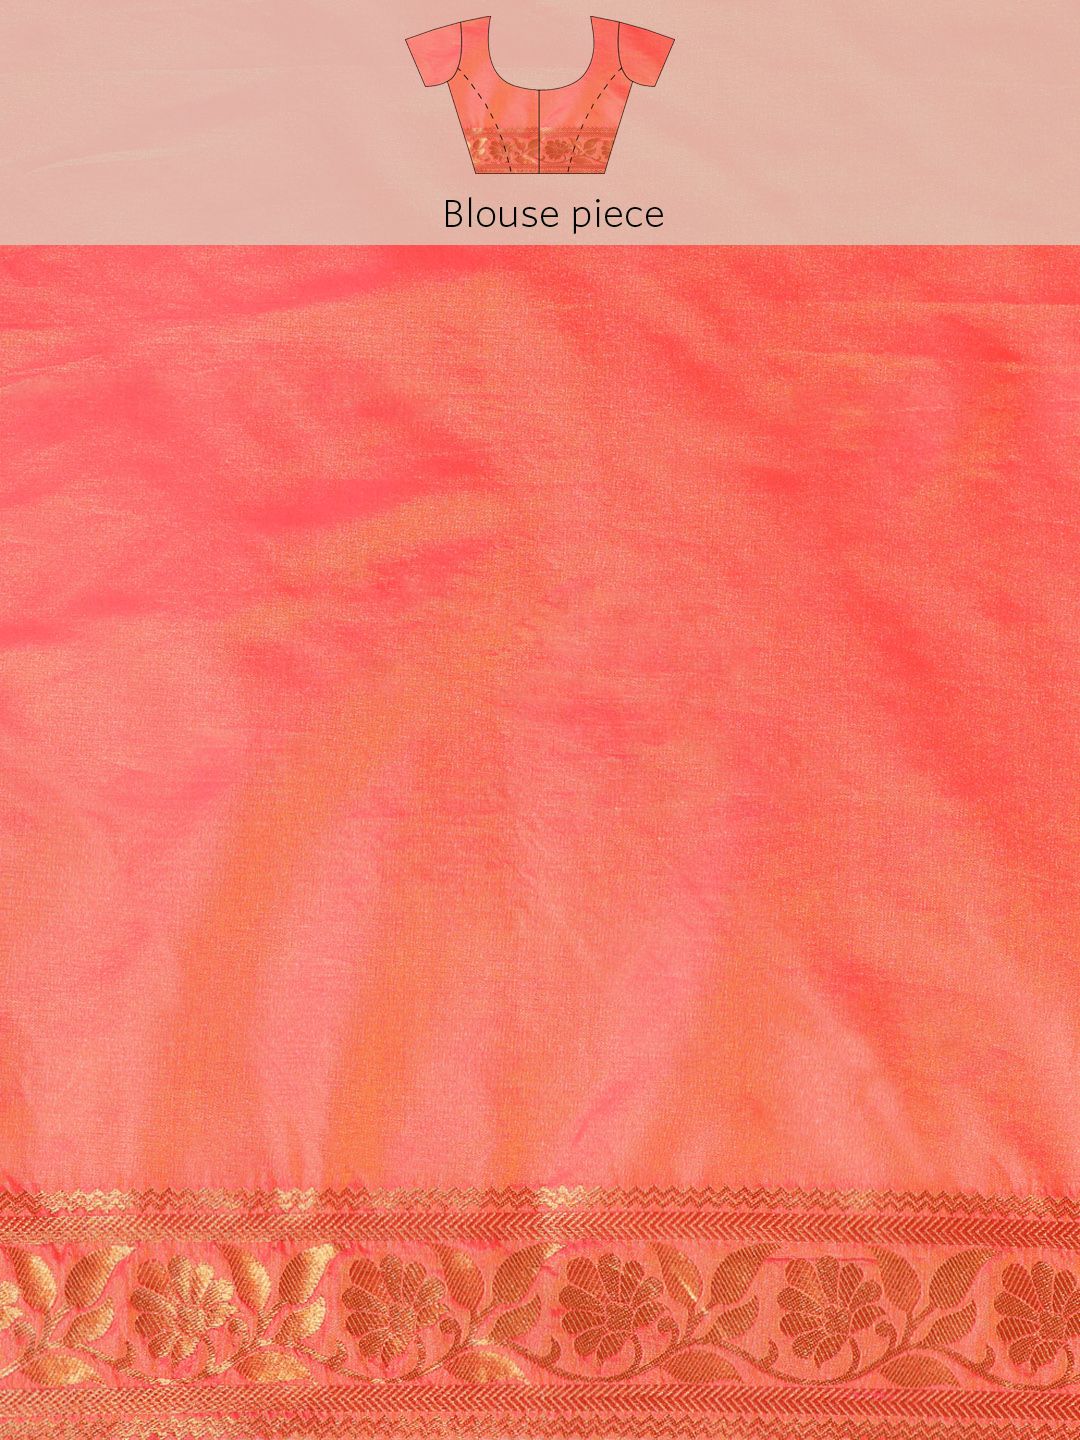 Sea Green Traditional Banarasi Silk Sarees